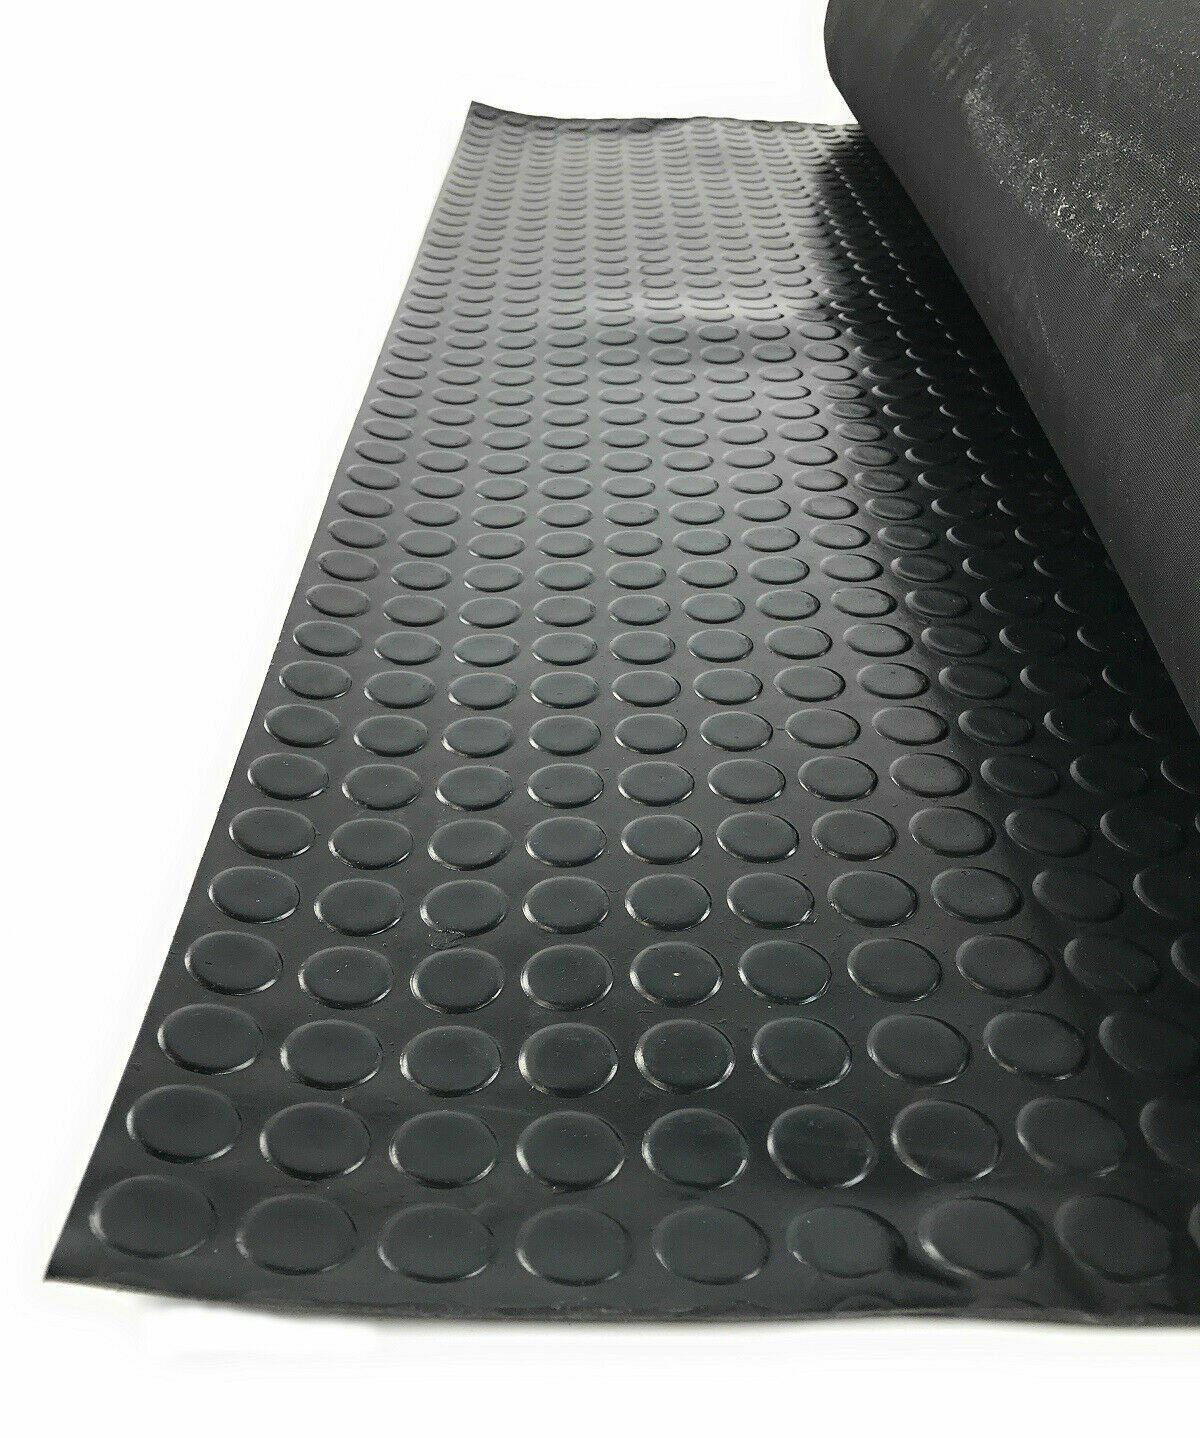 WAHHWF Gummimatte antirutschmatte Gummimatte, Turnhalle Boden-Gummimatten,  Fitnessgeräte Trainer Bodenmatte - Schwarz 3mm dick Rutschfester  Sicherheitsfußboden (Color : Black, Size : 0.6X0.6m/2X2ft) : :  Baumarkt